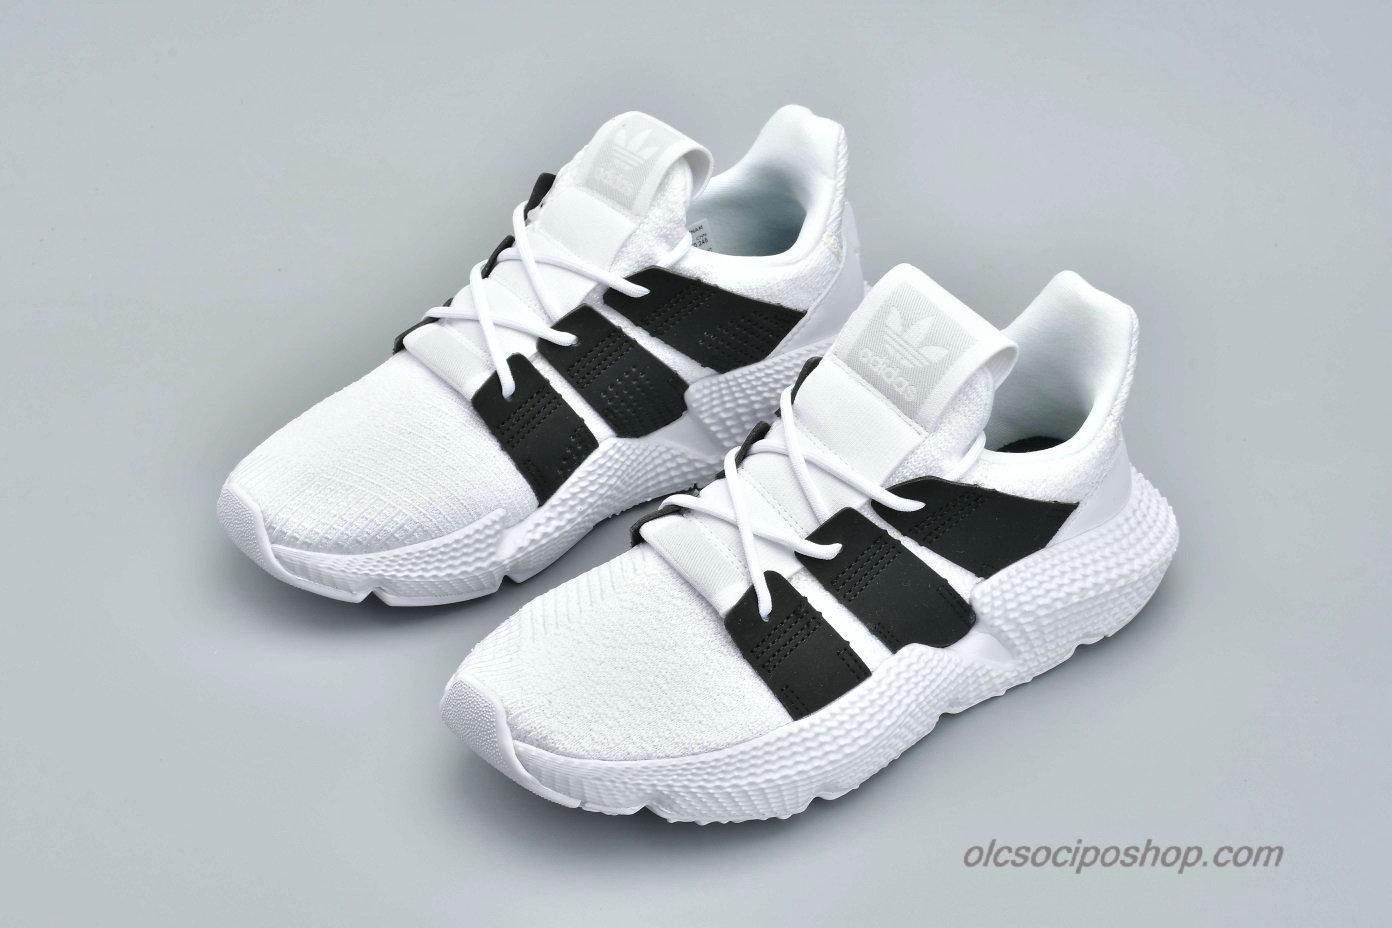 Adidas Prophere Undftd Fehér/Fekete Cipők (B96727) - Kattintásra bezárul